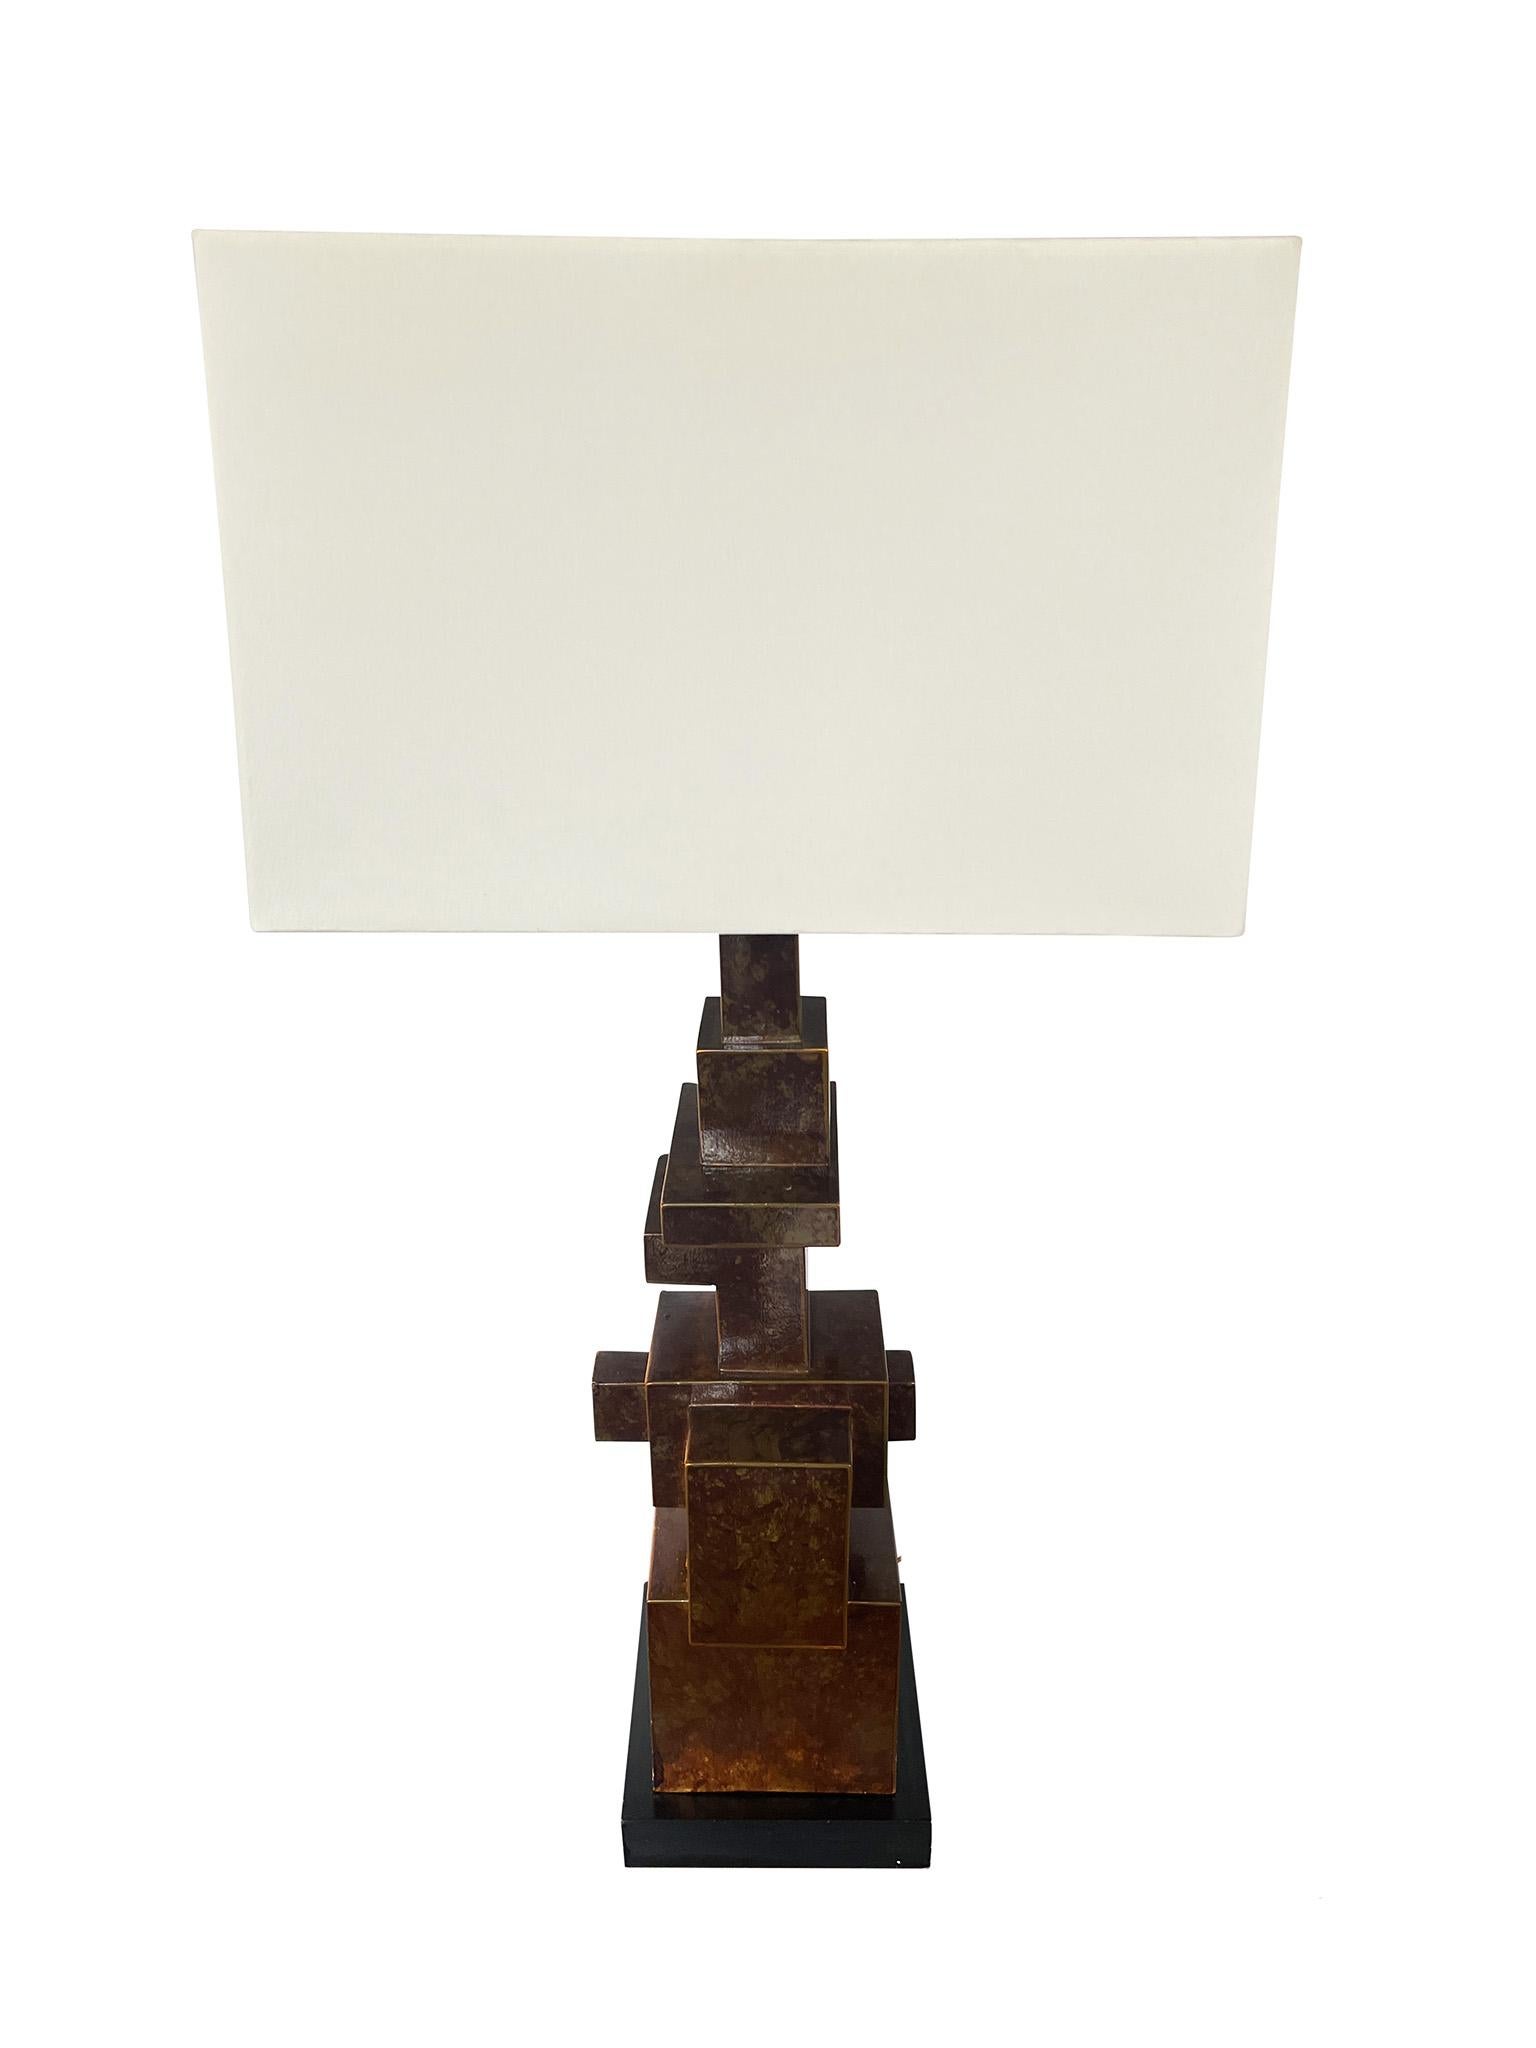 Lampe de table italienne unique dans le style du brutalisme. Fabriquée en métal patiné avec une base en bois noir, la lampe se caractérise par sa forme inhabituelle et sa composition architecturale, sa surface texturée et ses dégradés intentionnels.